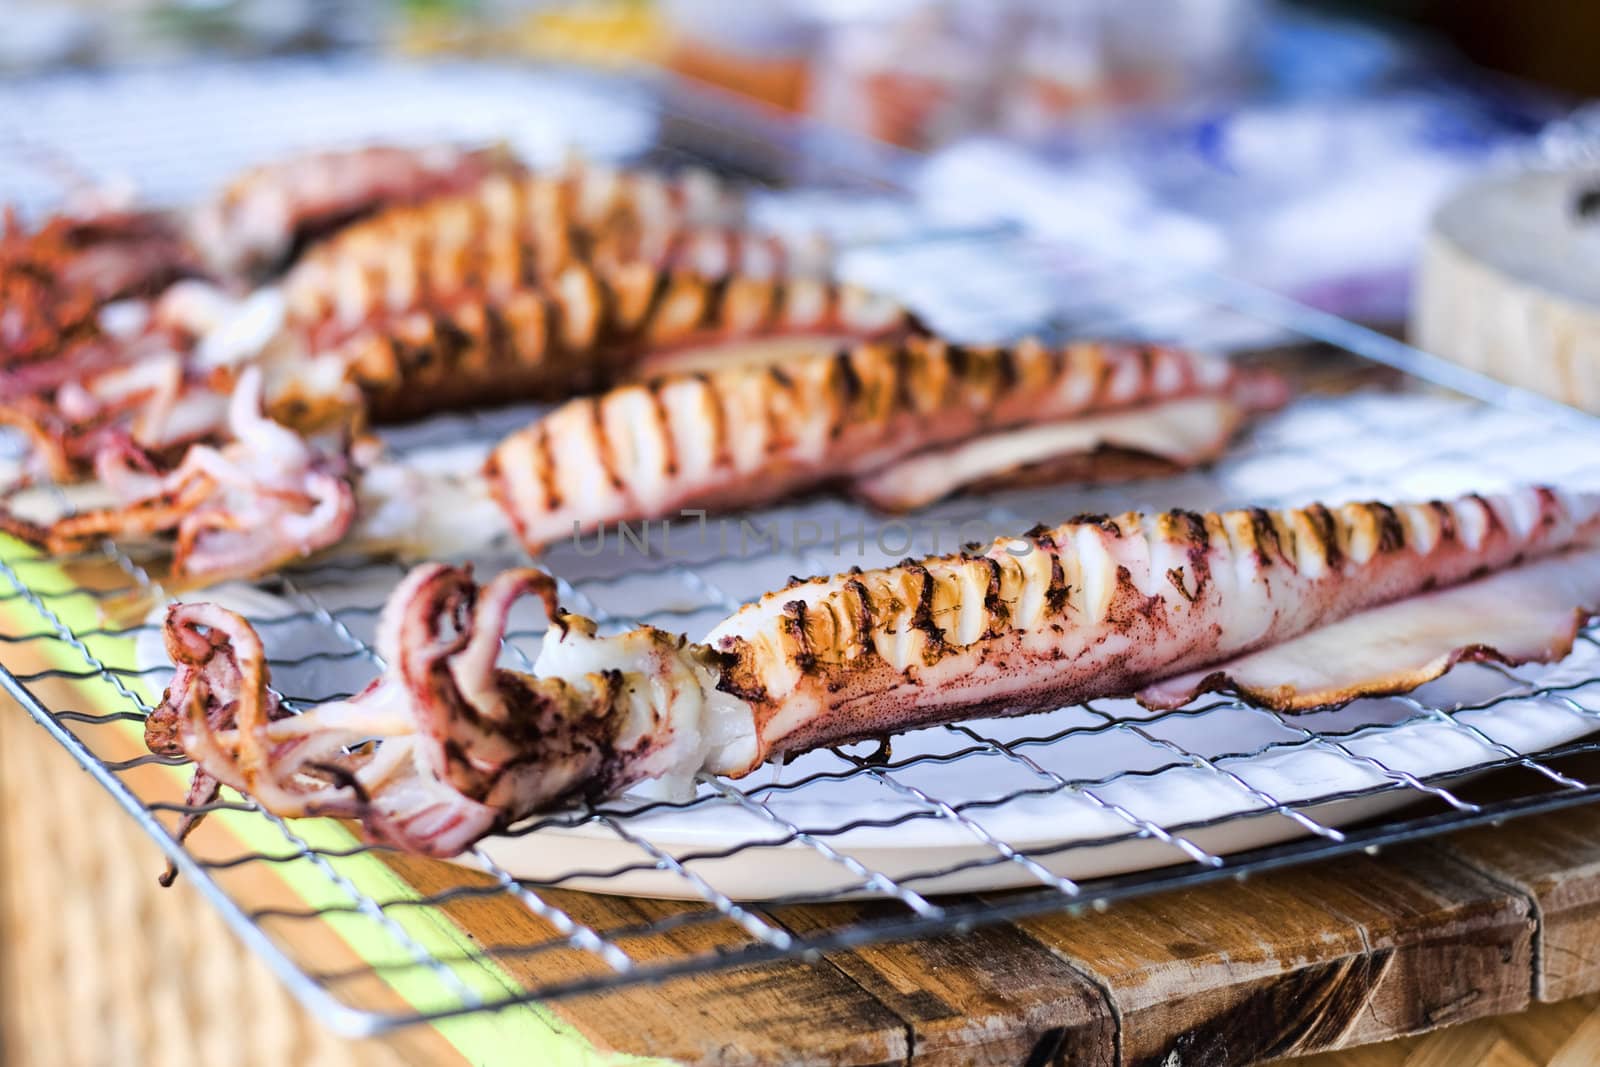 Freshly grilled squid cooling on racks in Thai market